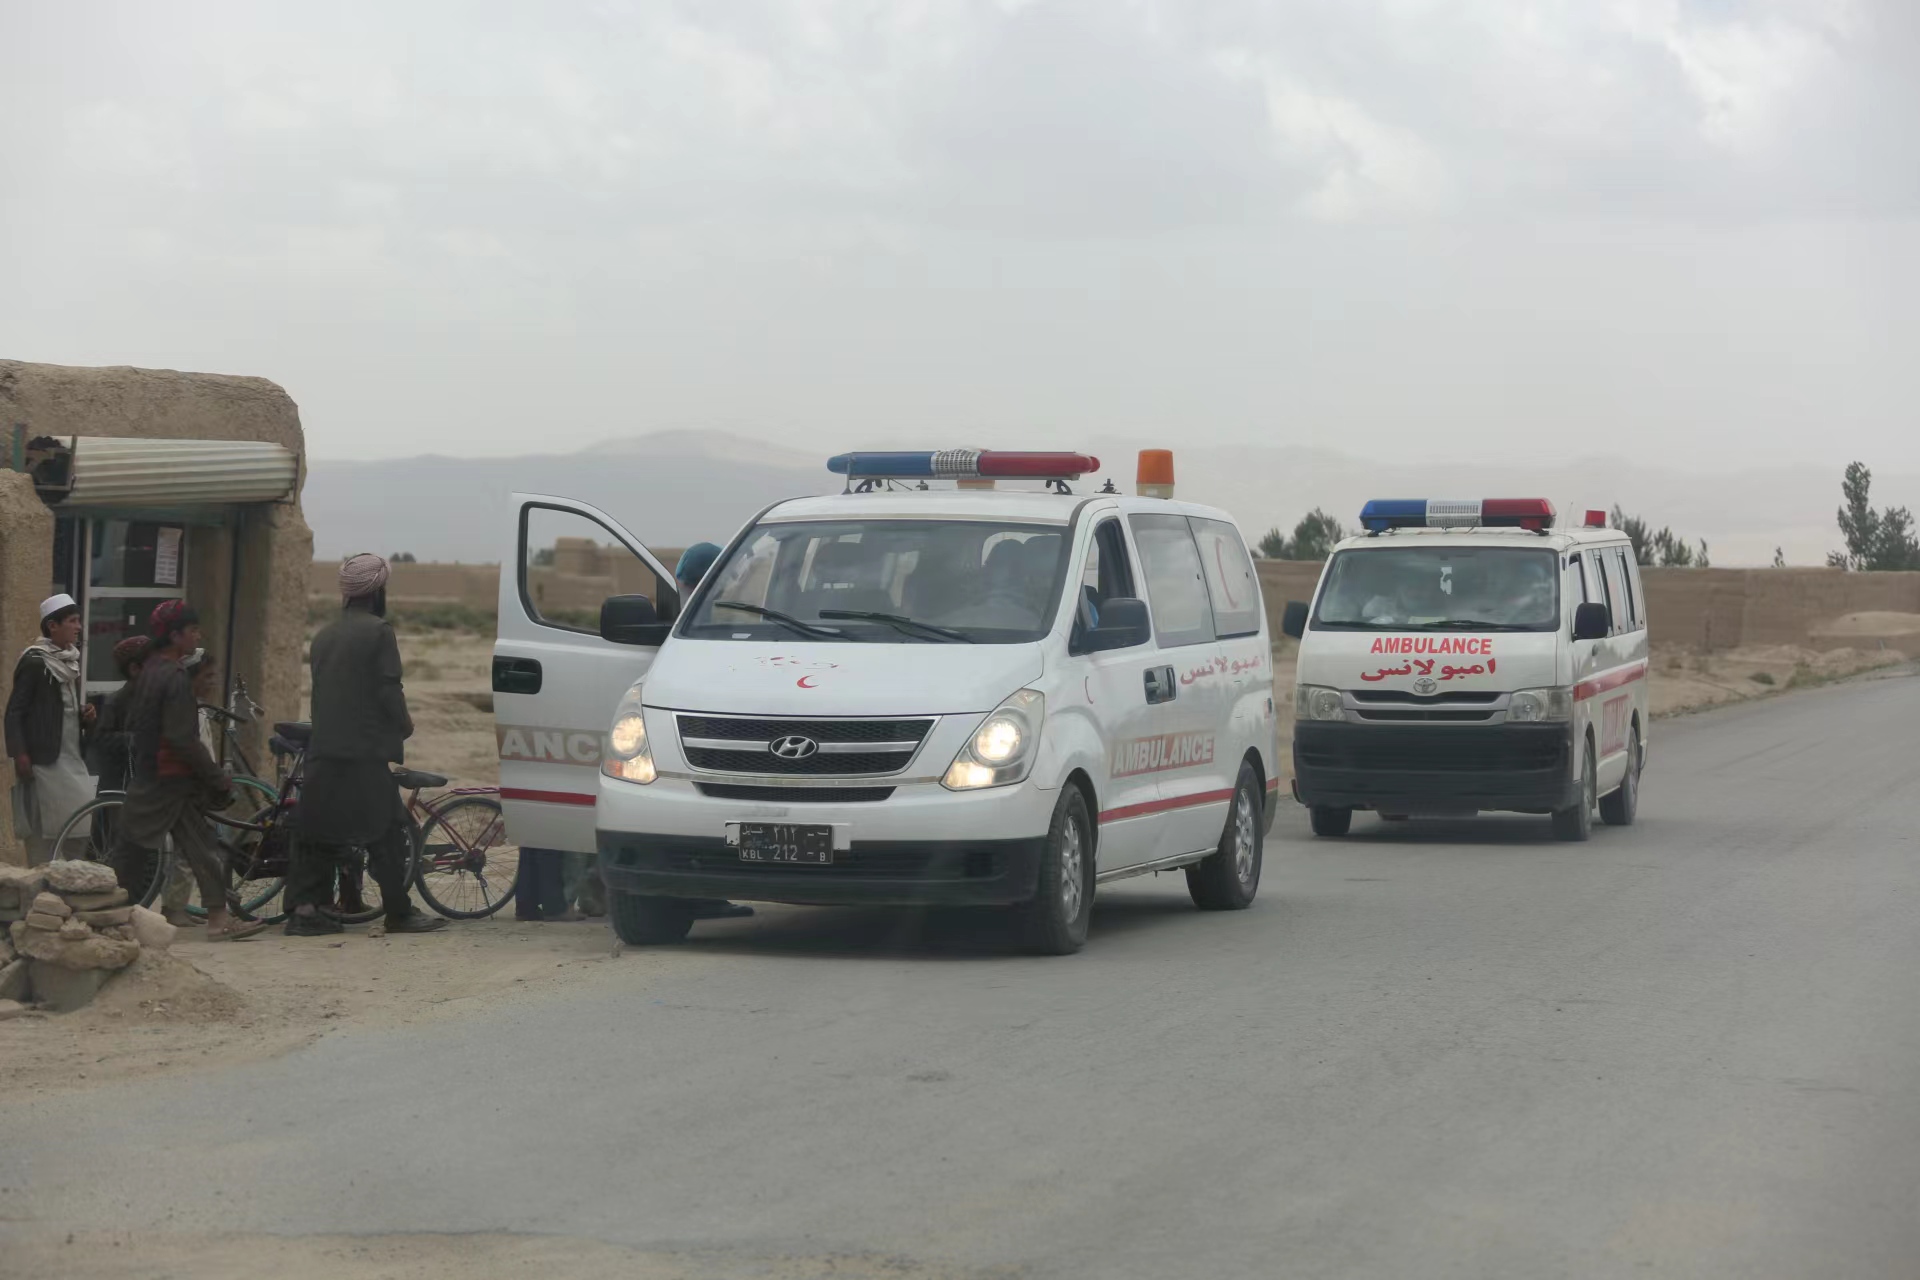 新华社发(塞夫拉赫曼·萨菲摄)6月22日,救护车在阿富汗帕克提卡省